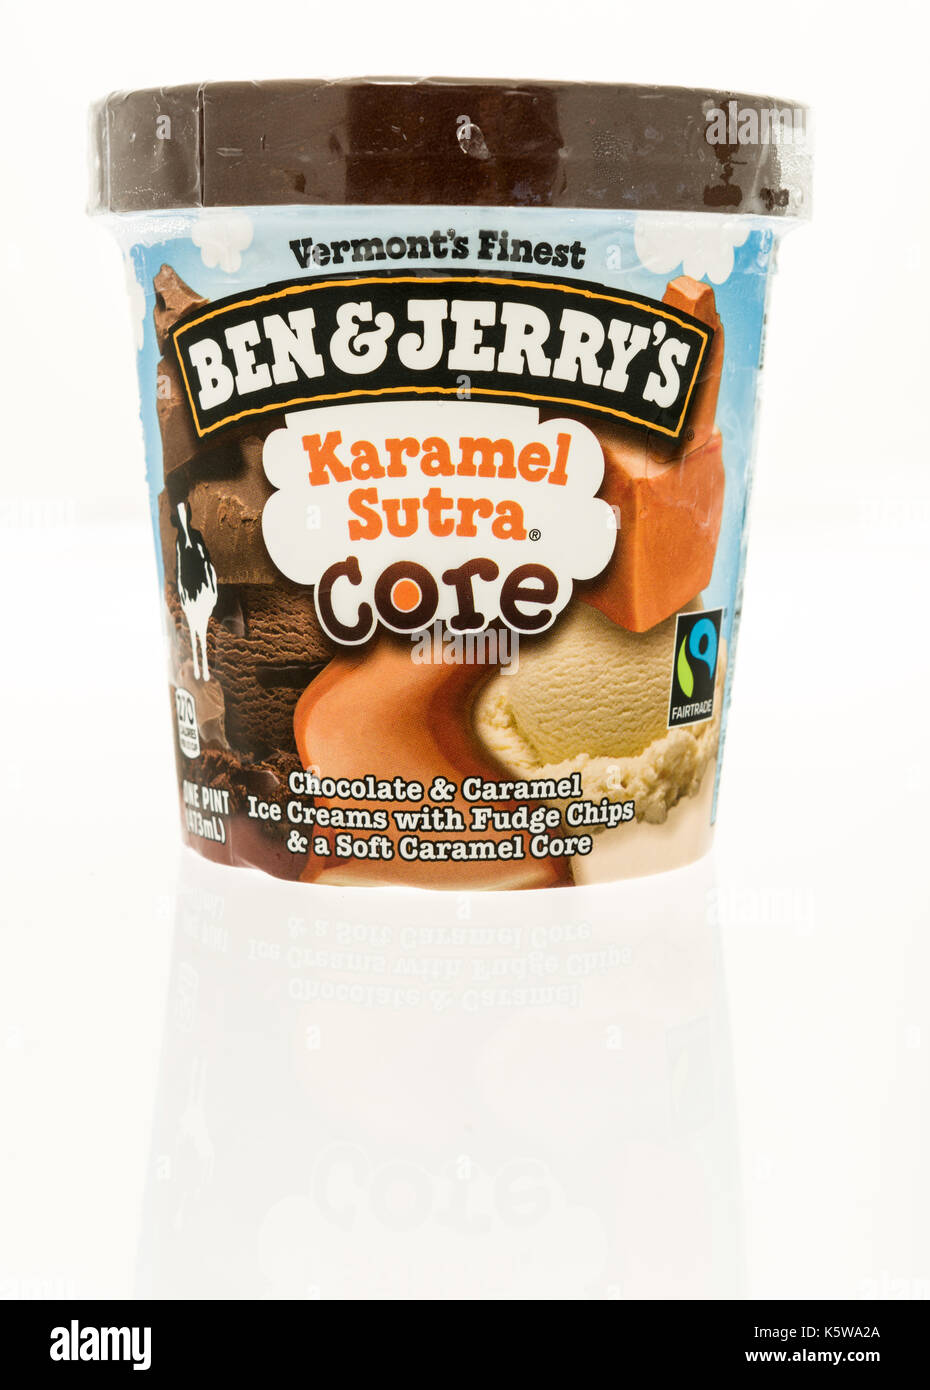 Winneconne, WI - 7. September 2017: ein Behälter von Ben und Jerry's Ice Cream in Karamel sutra core Geschmack auf einem isolierten Hintergrund. Stockfoto